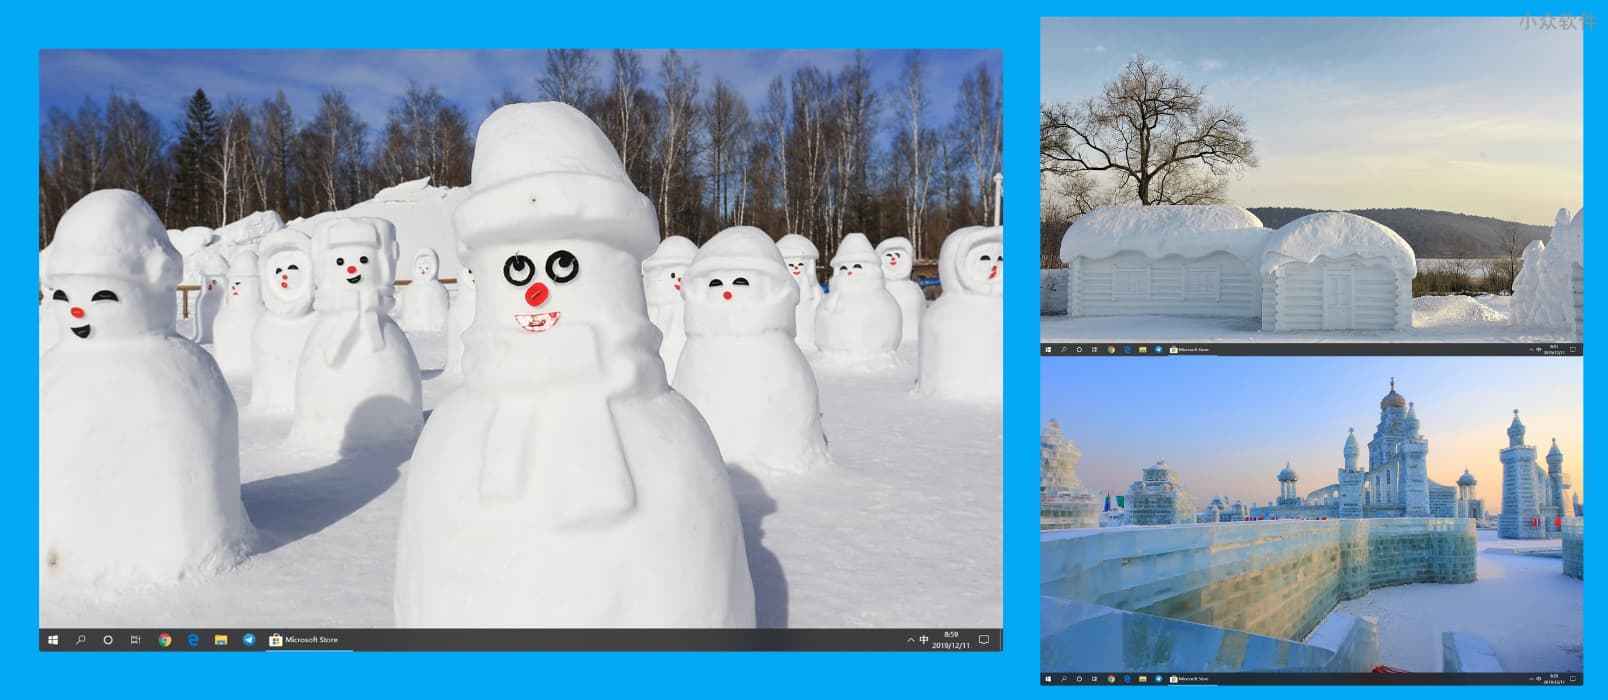 Snow Sculptures - 14 幅图像的 Windows 10 冬日雪景主题，微软官方主题 1